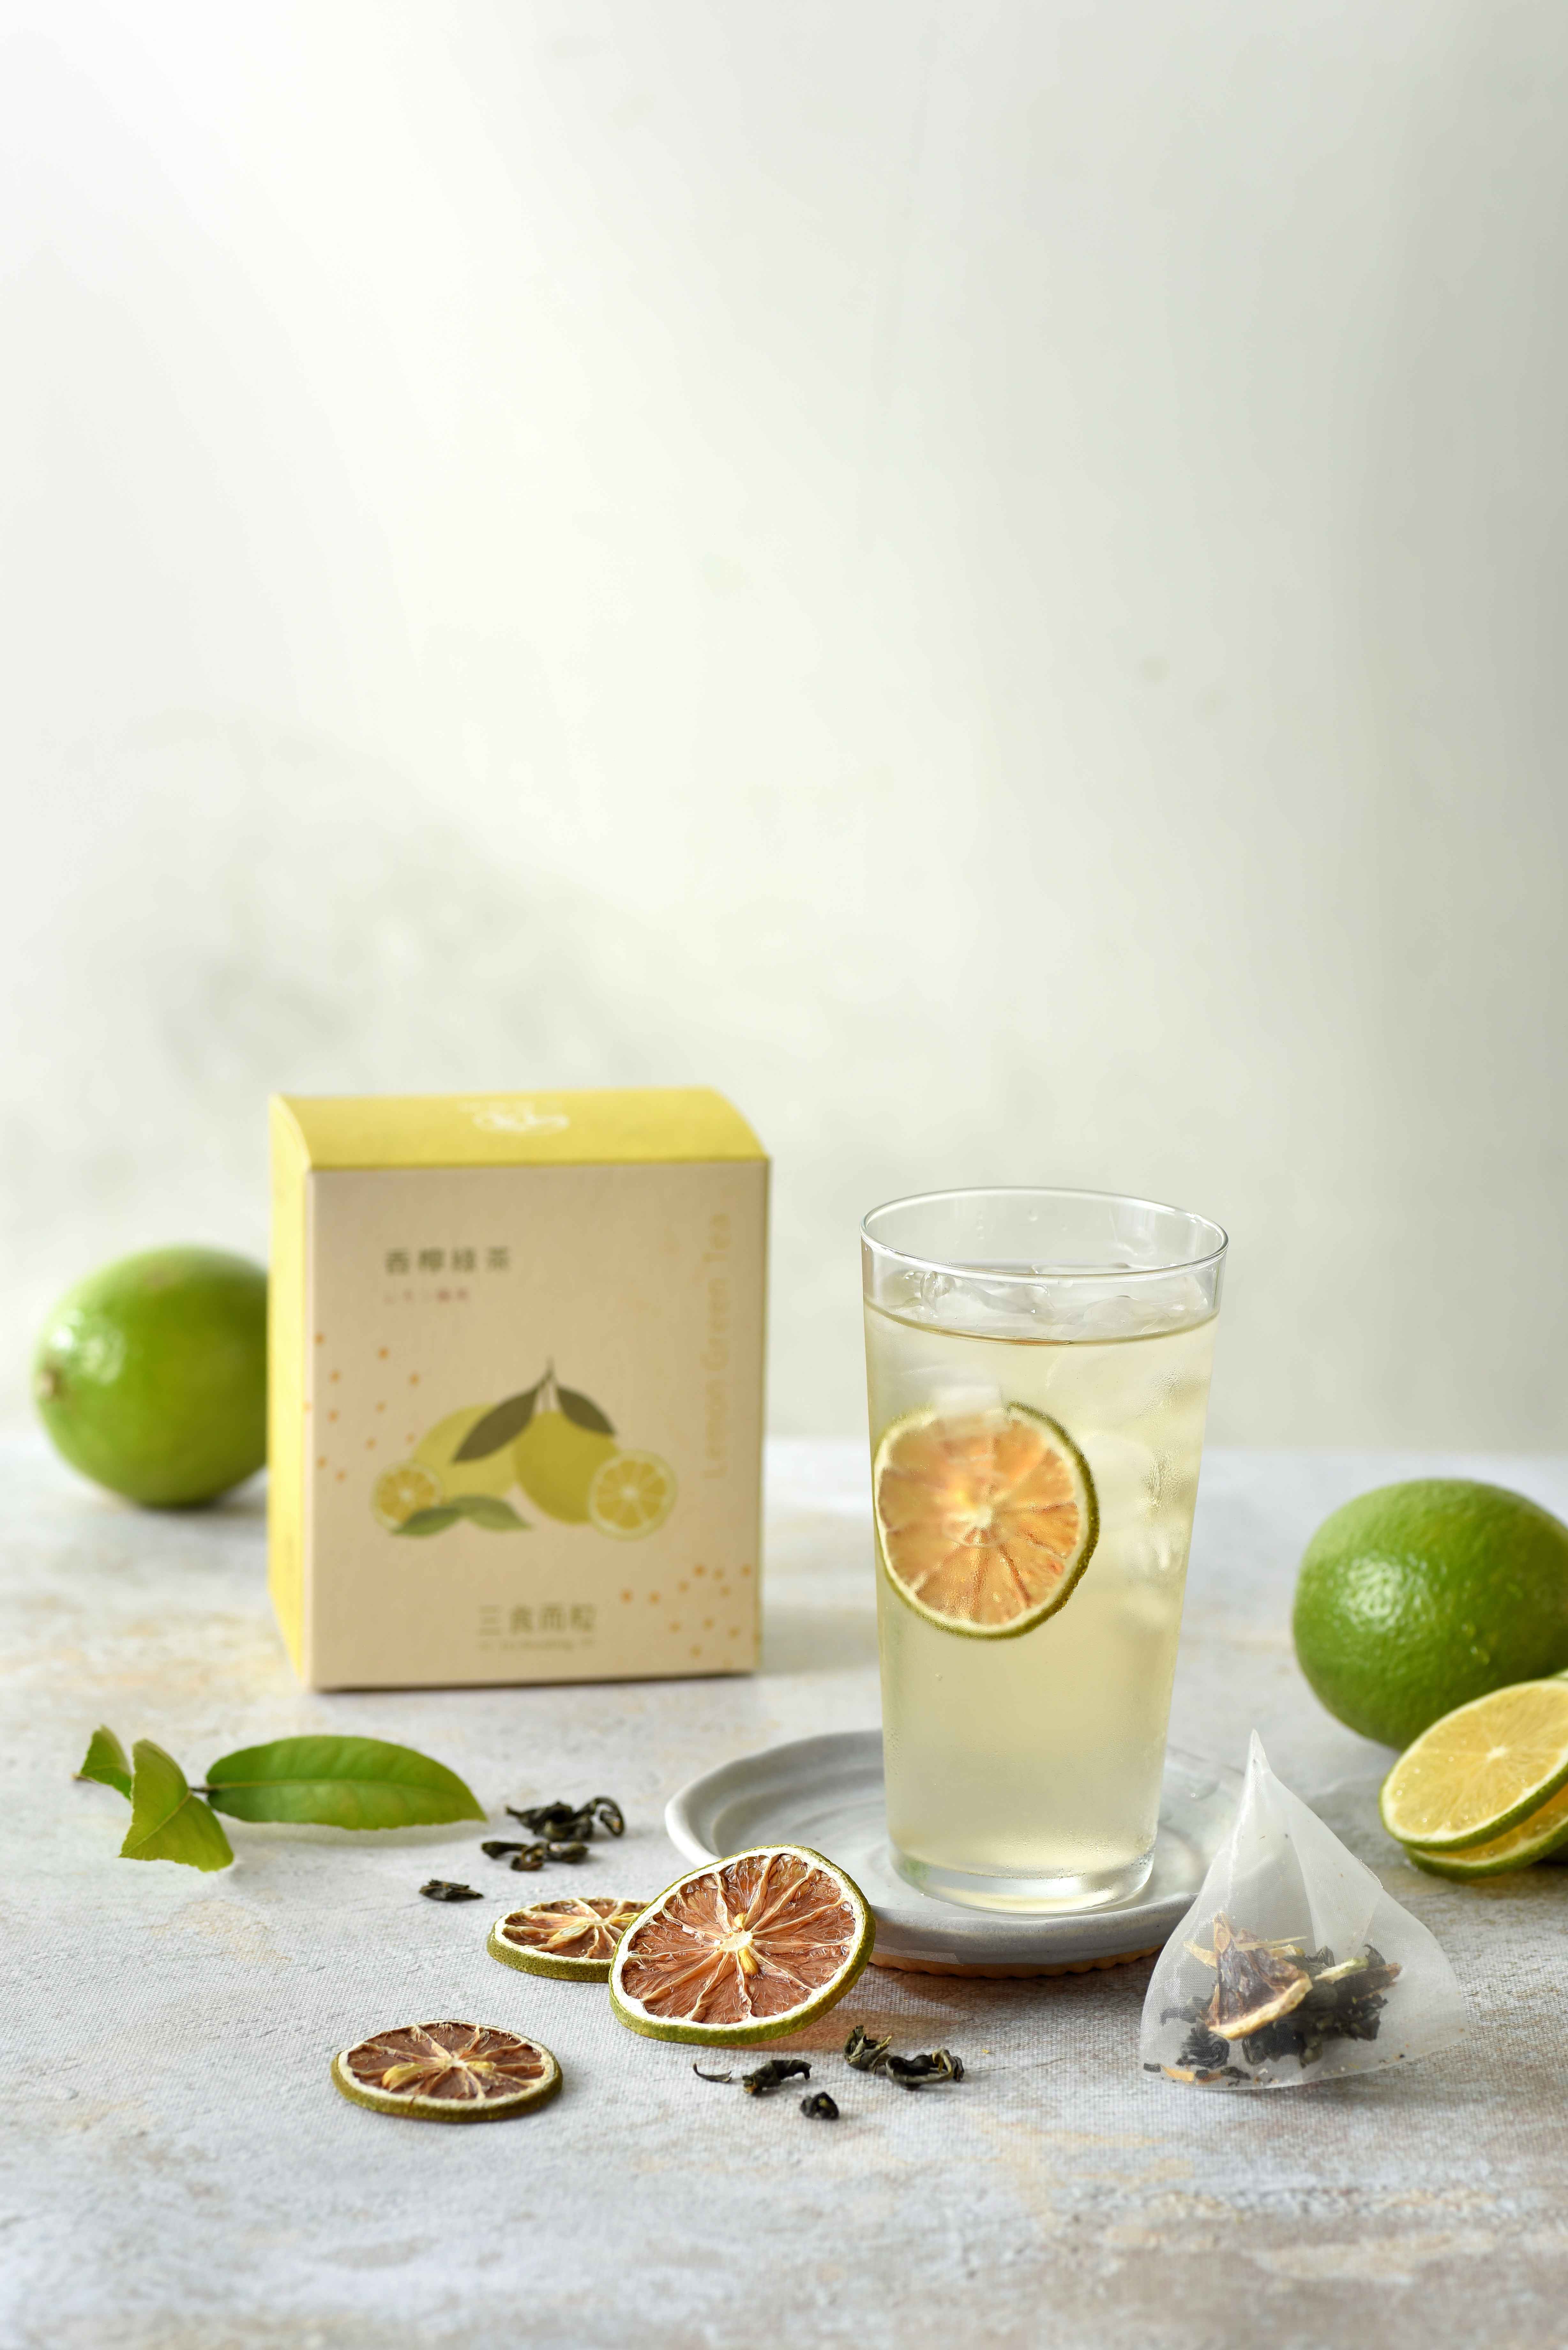 低溫烘焙乾燥的檸檬，搭配國內茶農種植優質精選綠茶；
<br />淡淡酸酸的檸檬以及綠茶的清香，邀您一起品味在地果茶香。